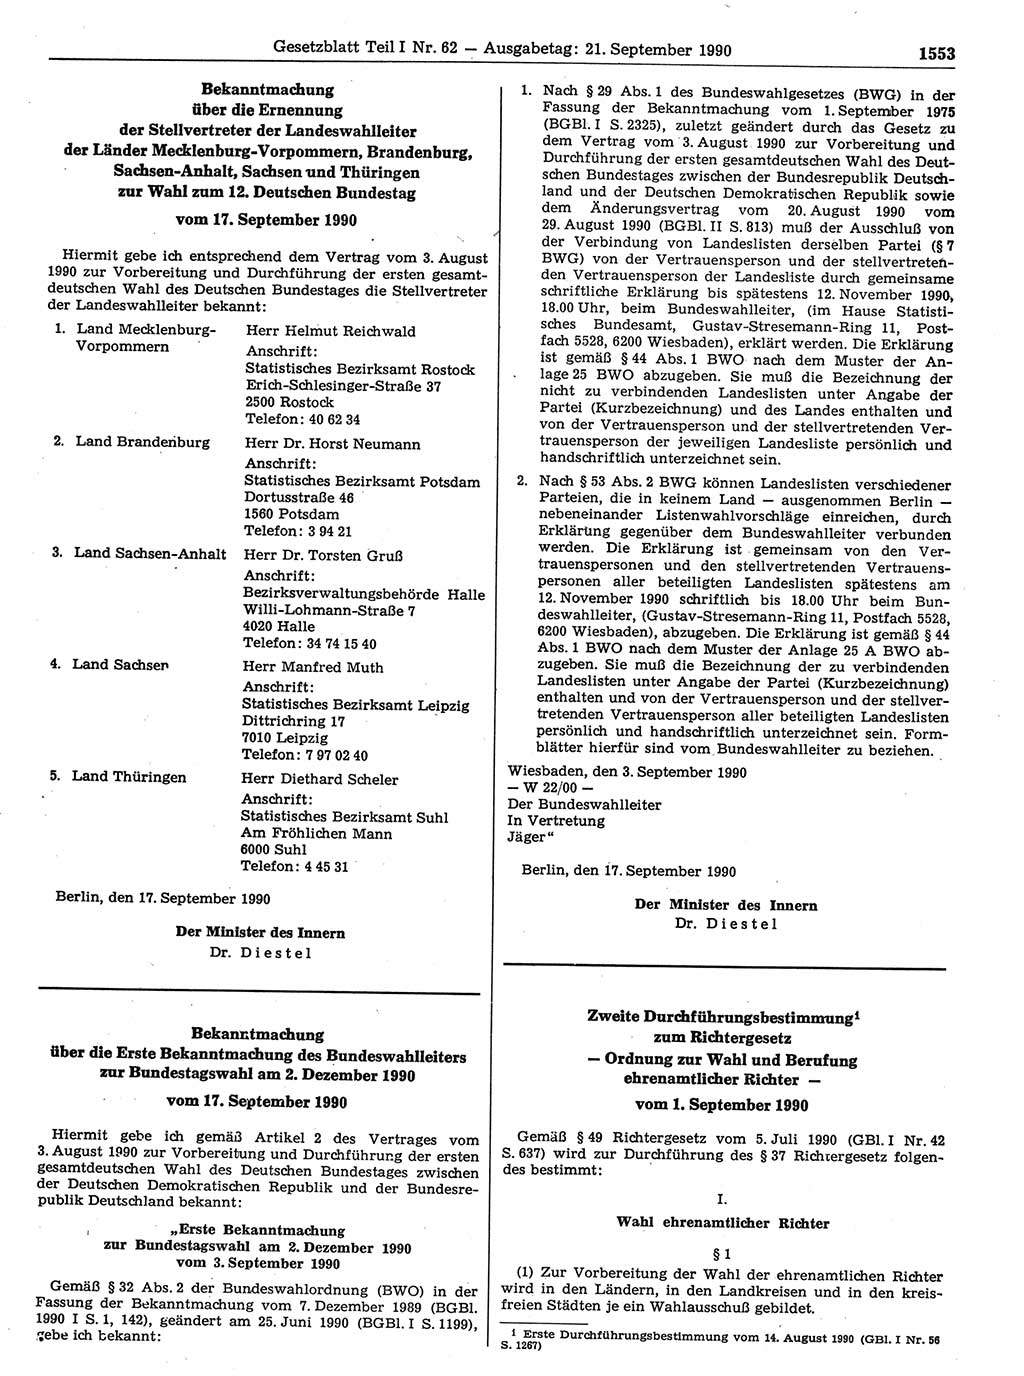 Gesetzblatt (GBl.) der Deutschen Demokratischen Republik (DDR) Teil Ⅰ 1990, Seite 1553 (GBl. DDR Ⅰ 1990, S. 1553)